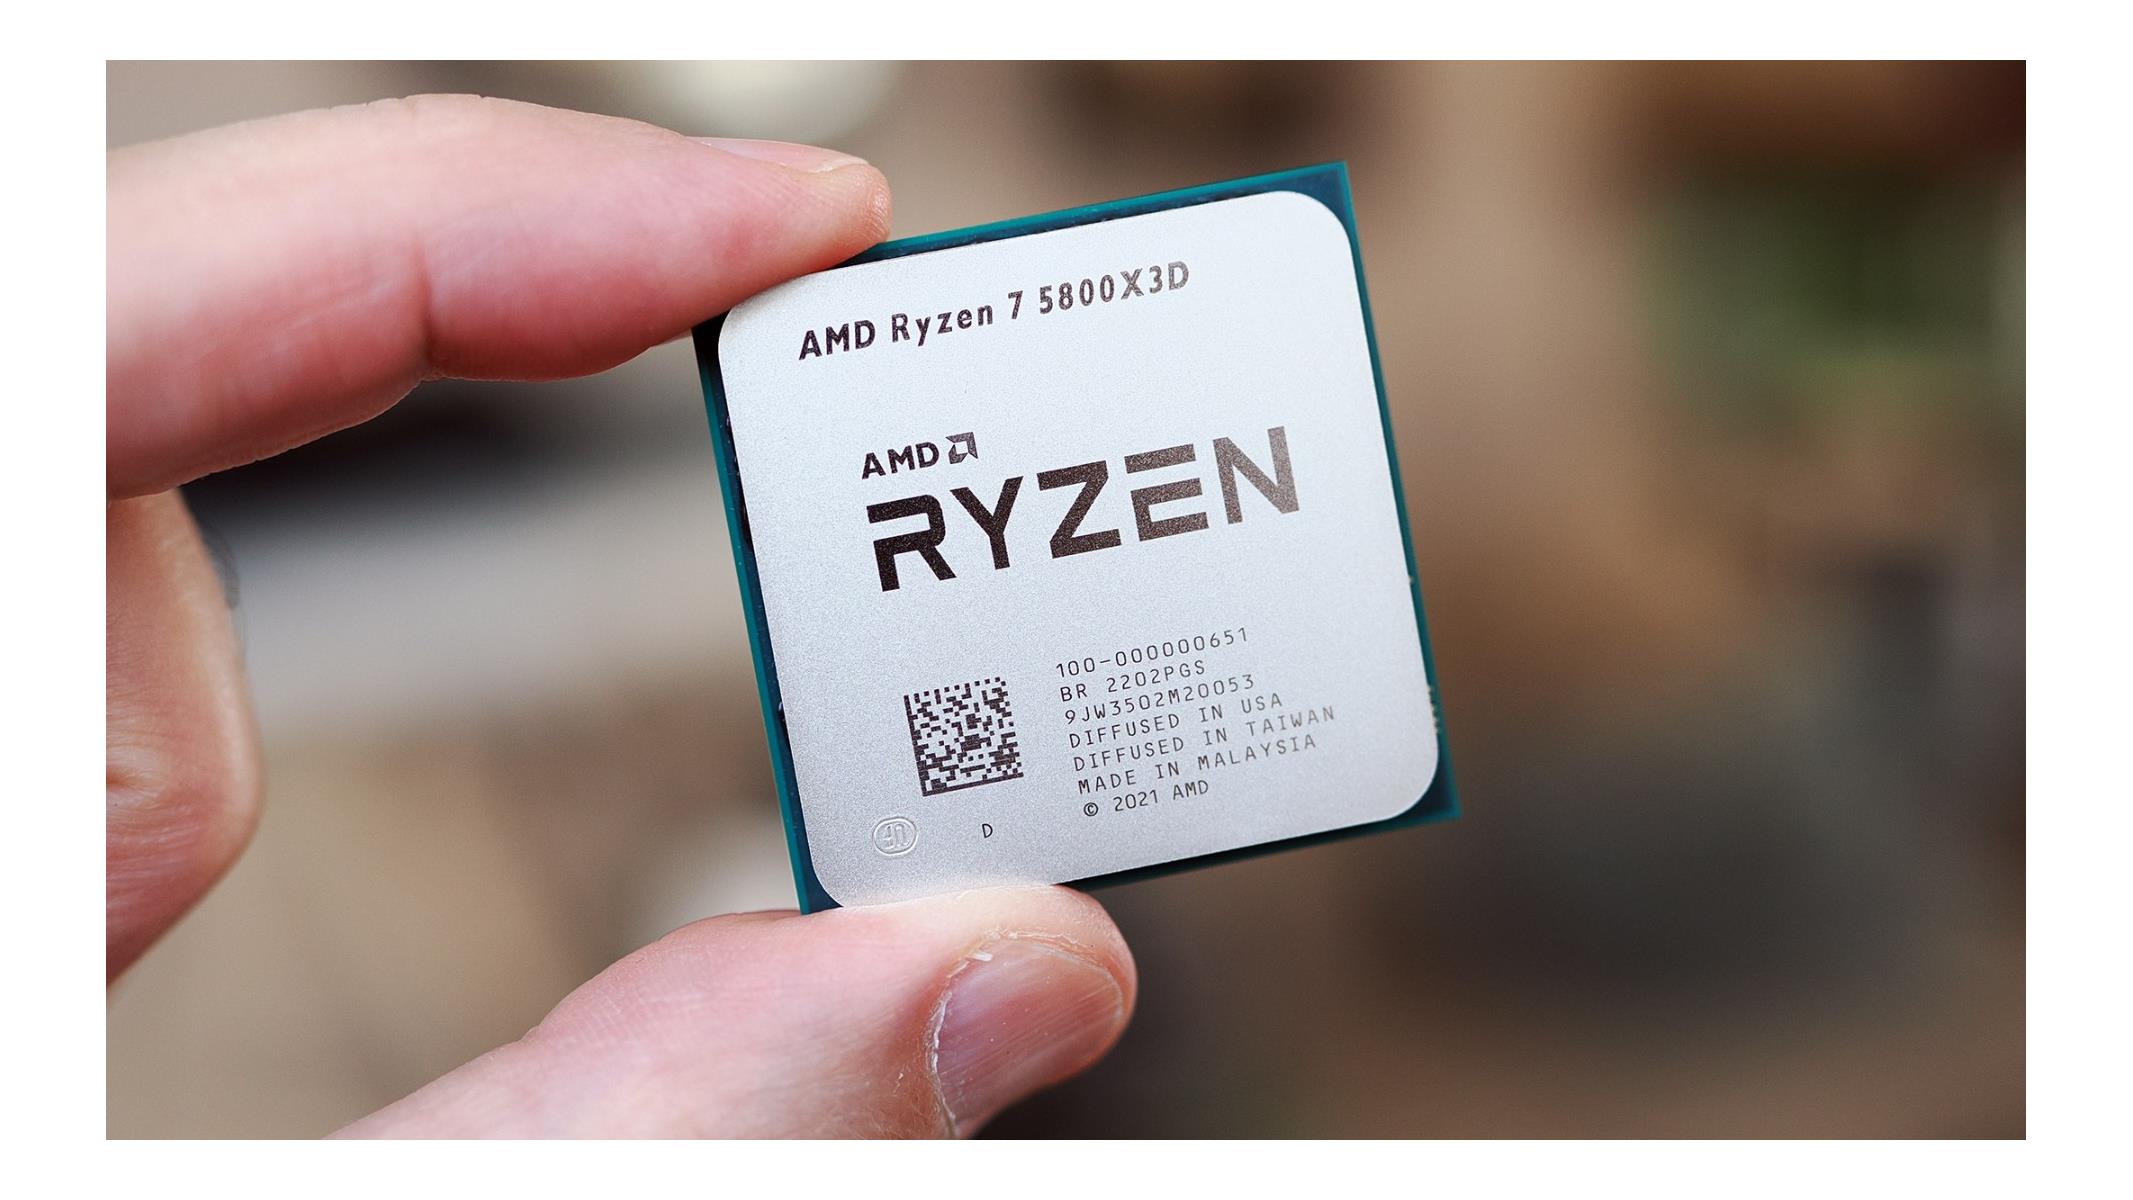 AMD Ryzen 7 5800X3D CPU Review: The King Of PC Gaming, cpu amd - okgo.net